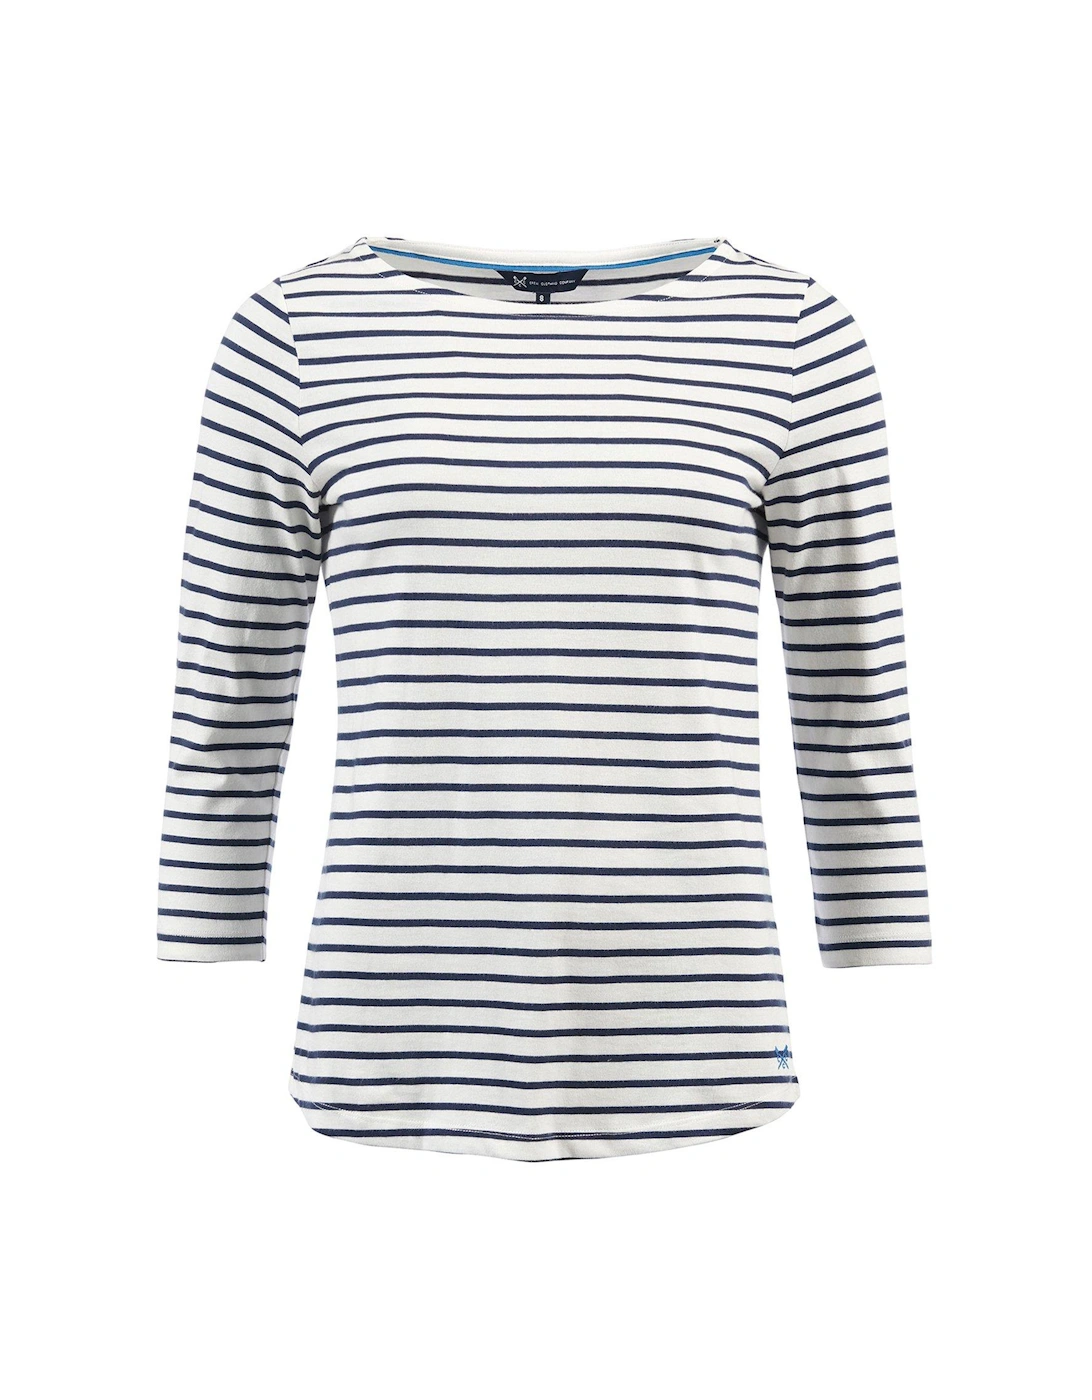 Breton Stripe T-shirt - Navy, 2 of 1